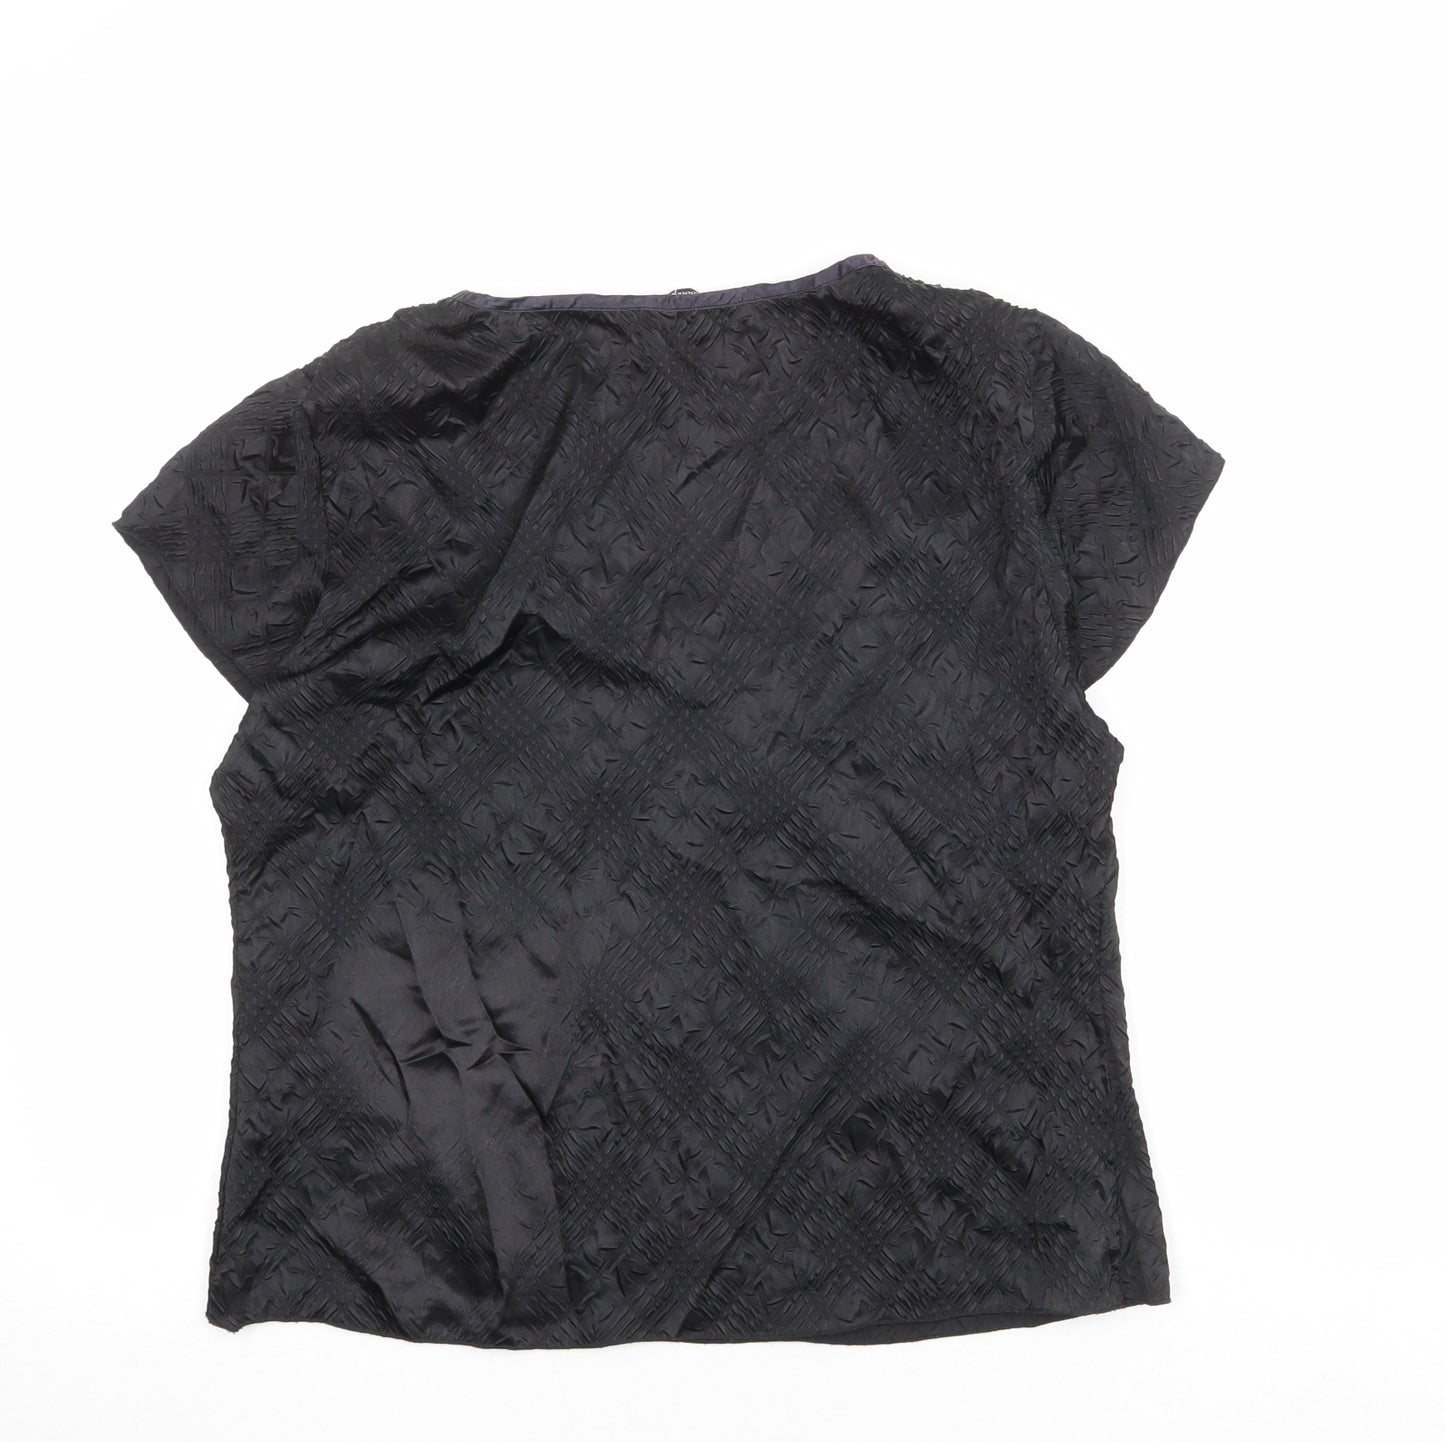 Dunnes Stores Womens Black Polyester Basic T-Shirt Size 16 V-Neck